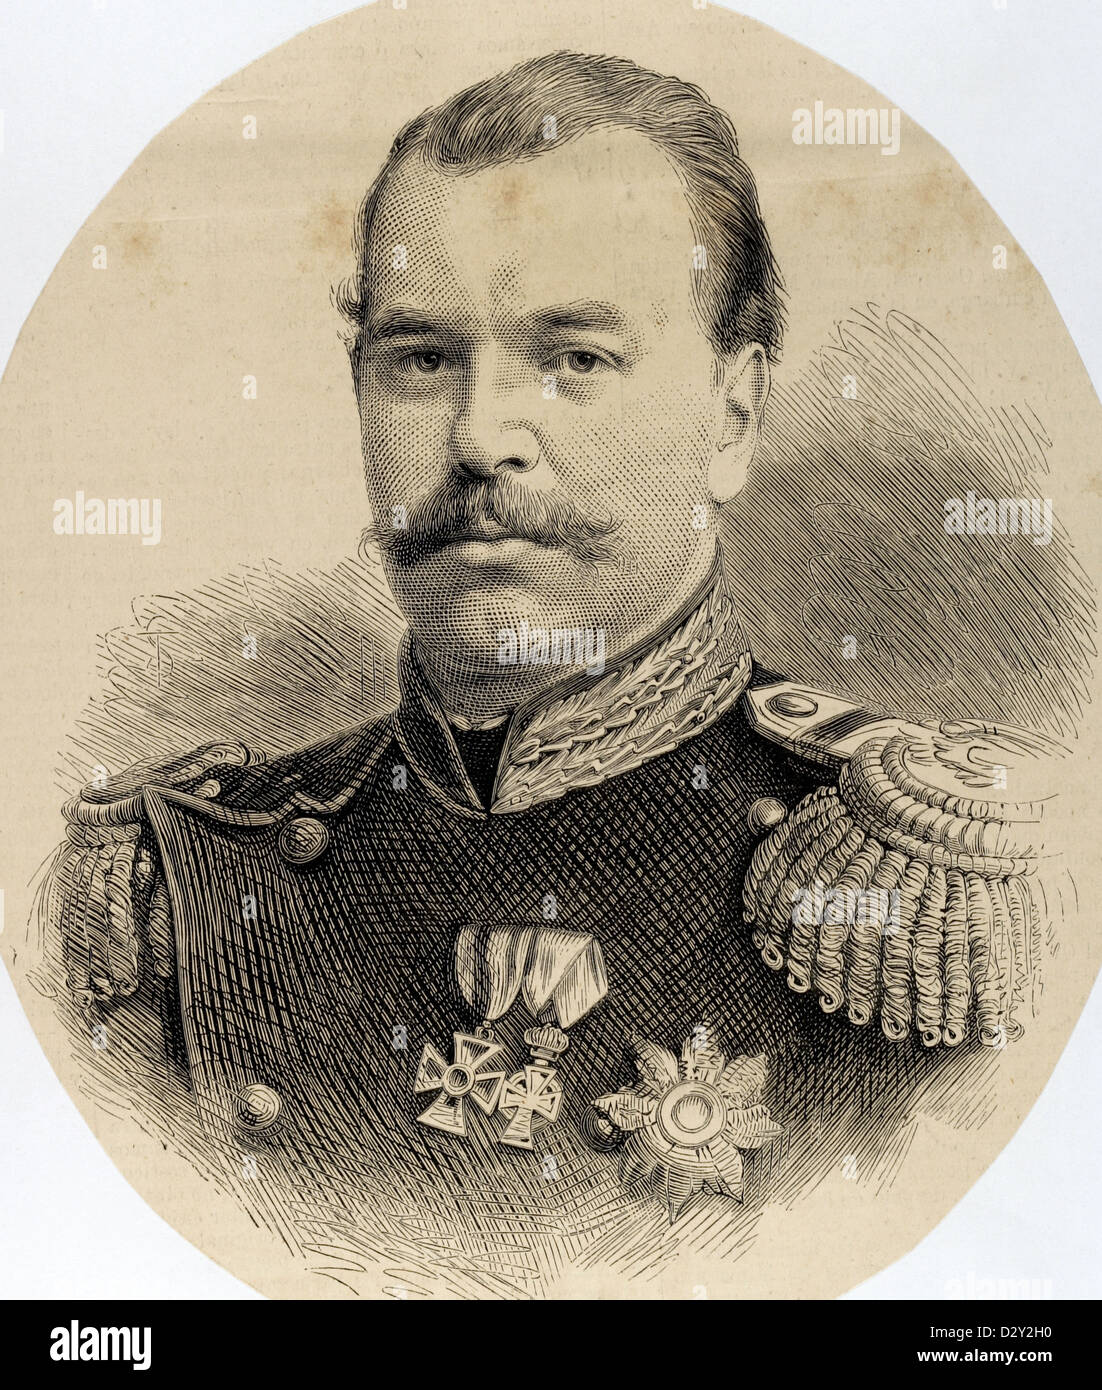 Alexandre III de Russie (1845-1894). Empereur de Russie. Gravure de l'espagnol et l'American Illustration, 1877. Banque D'Images